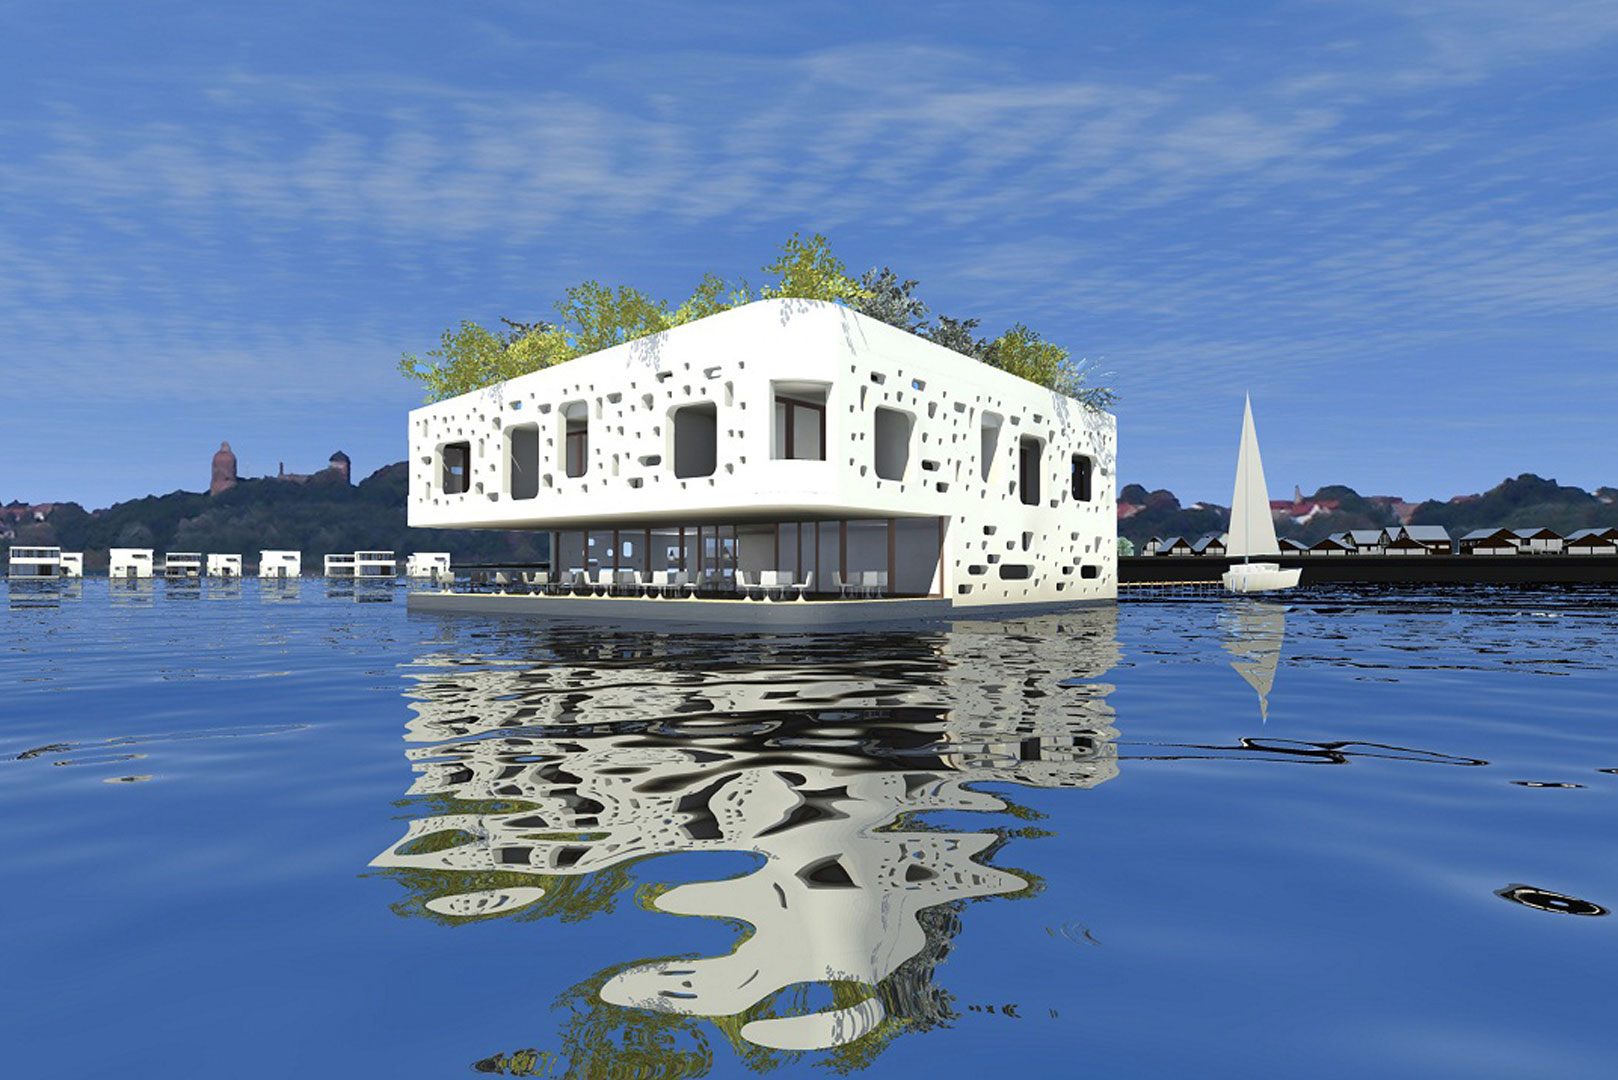 schwimmendes restaurant luxus wasser see floating restaurant